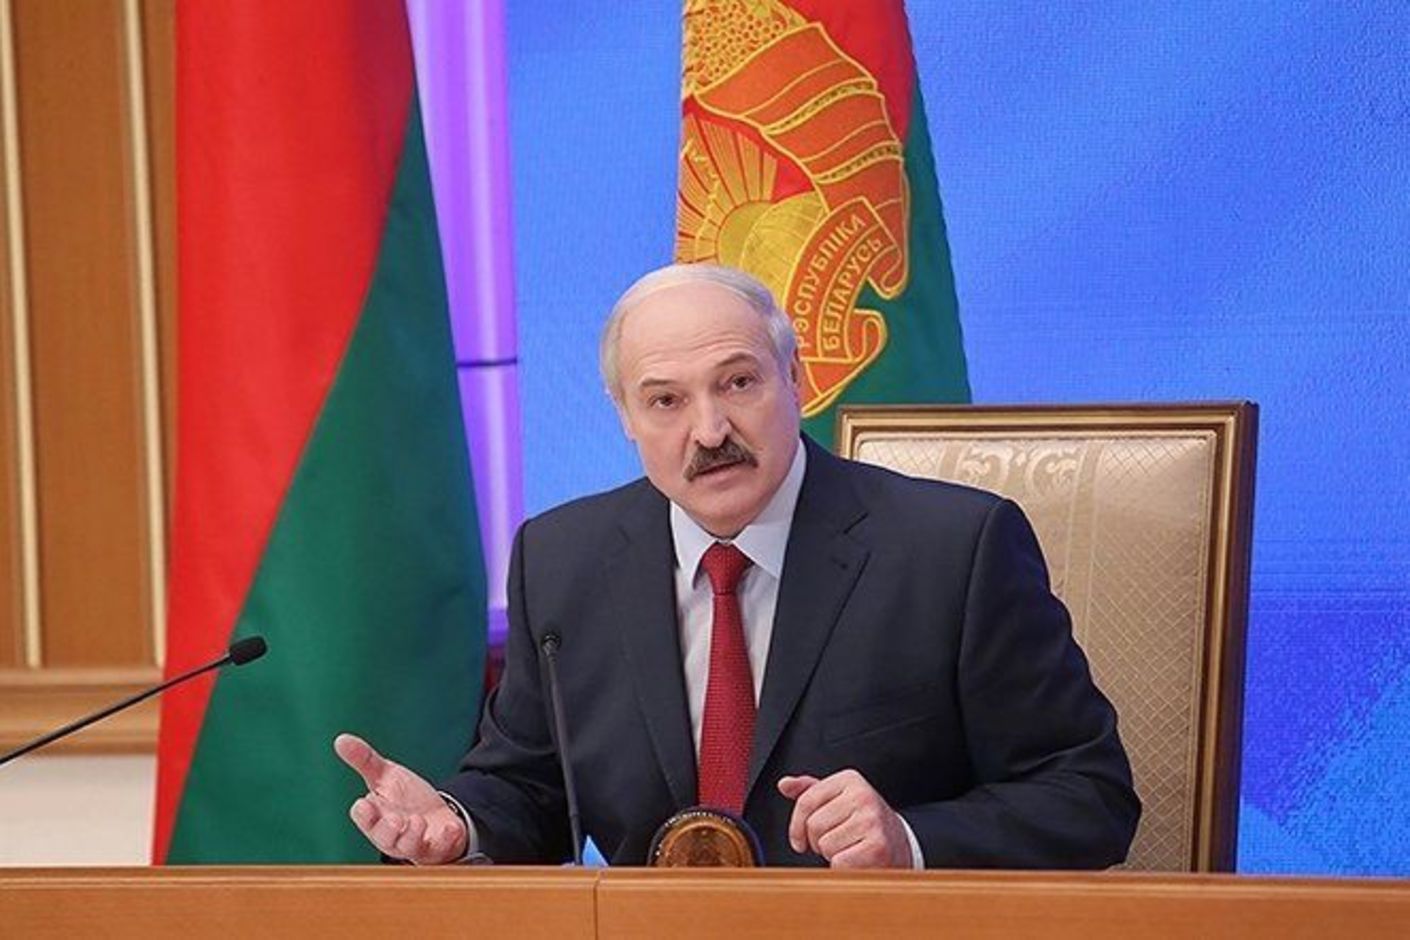 Беларусь и Россия предъявляют друг другу претензии через СМИ, реальное сотрудничество развивается в фоновом режиме конкуренции